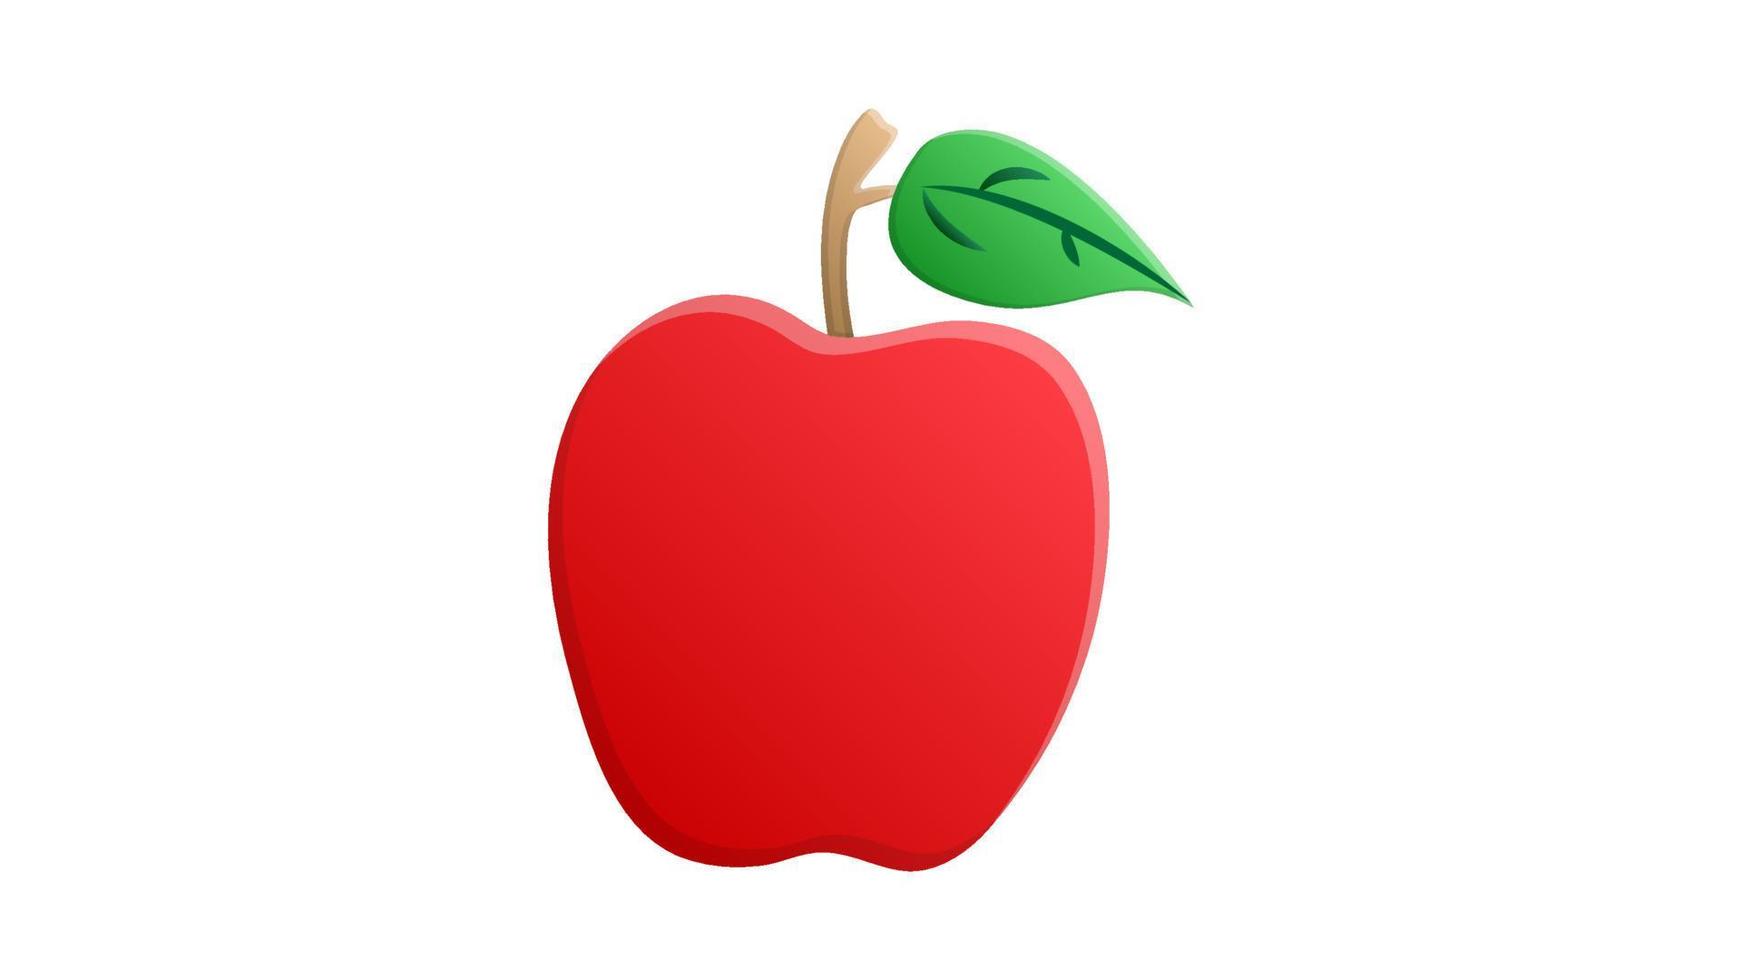 appel van rood kleur Aan een wit achtergrond, vector illustratie. fruit voor aan het eten. gezond voedsel, eetpatroon voedsel, veganistisch voedsel, rauw voedsel eetpatroon. illustratie voor cafe